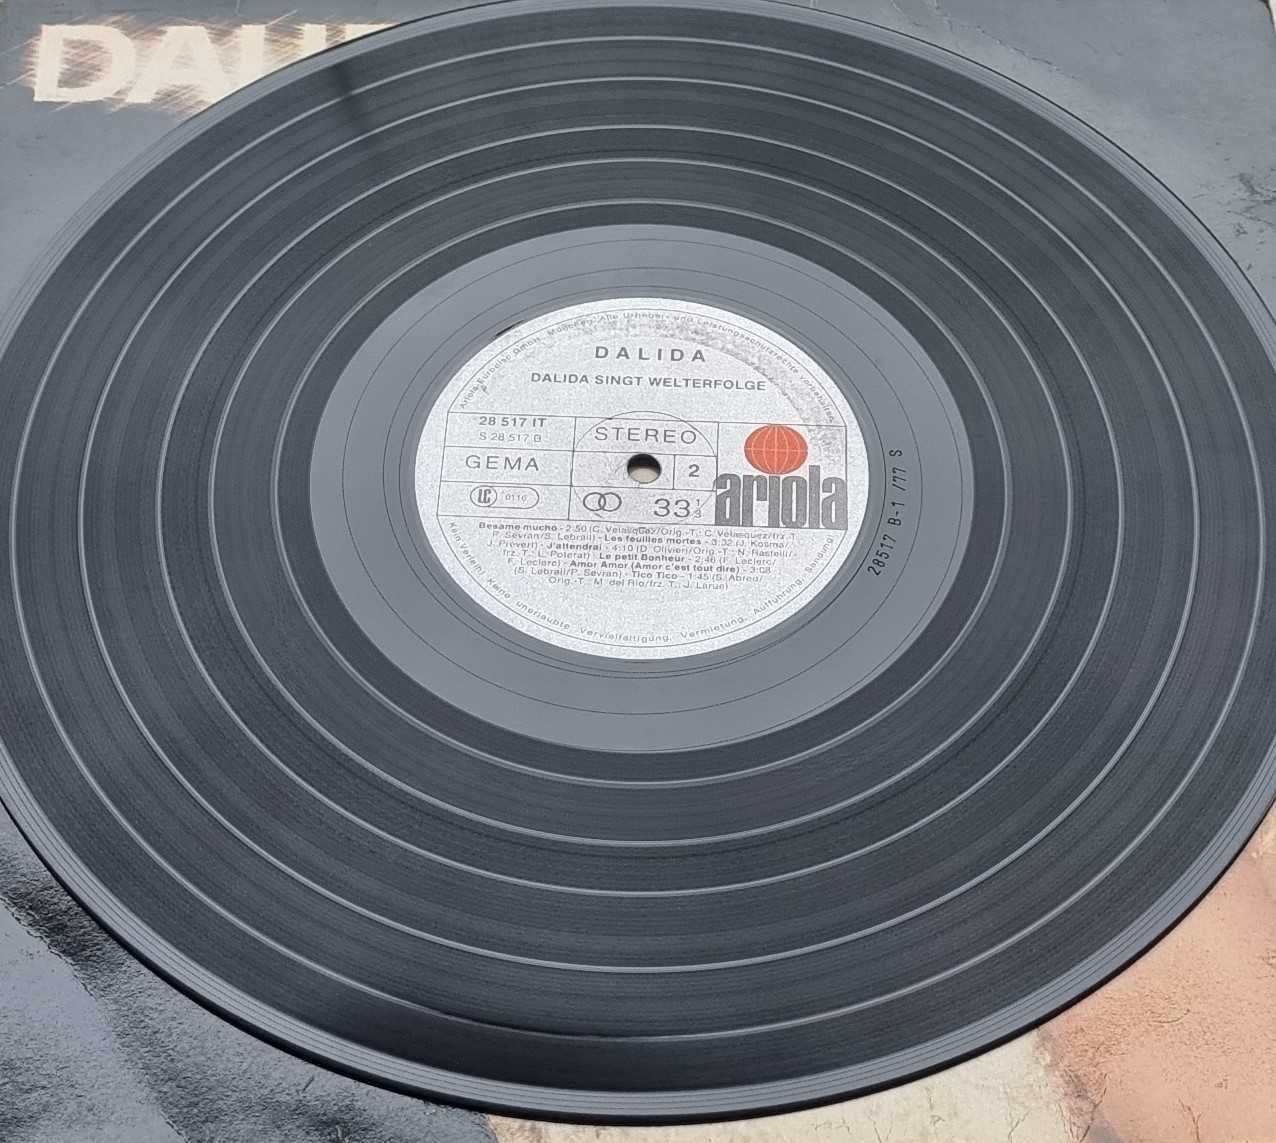 винил - Dalida singt Welterfolge- vinyl 12'